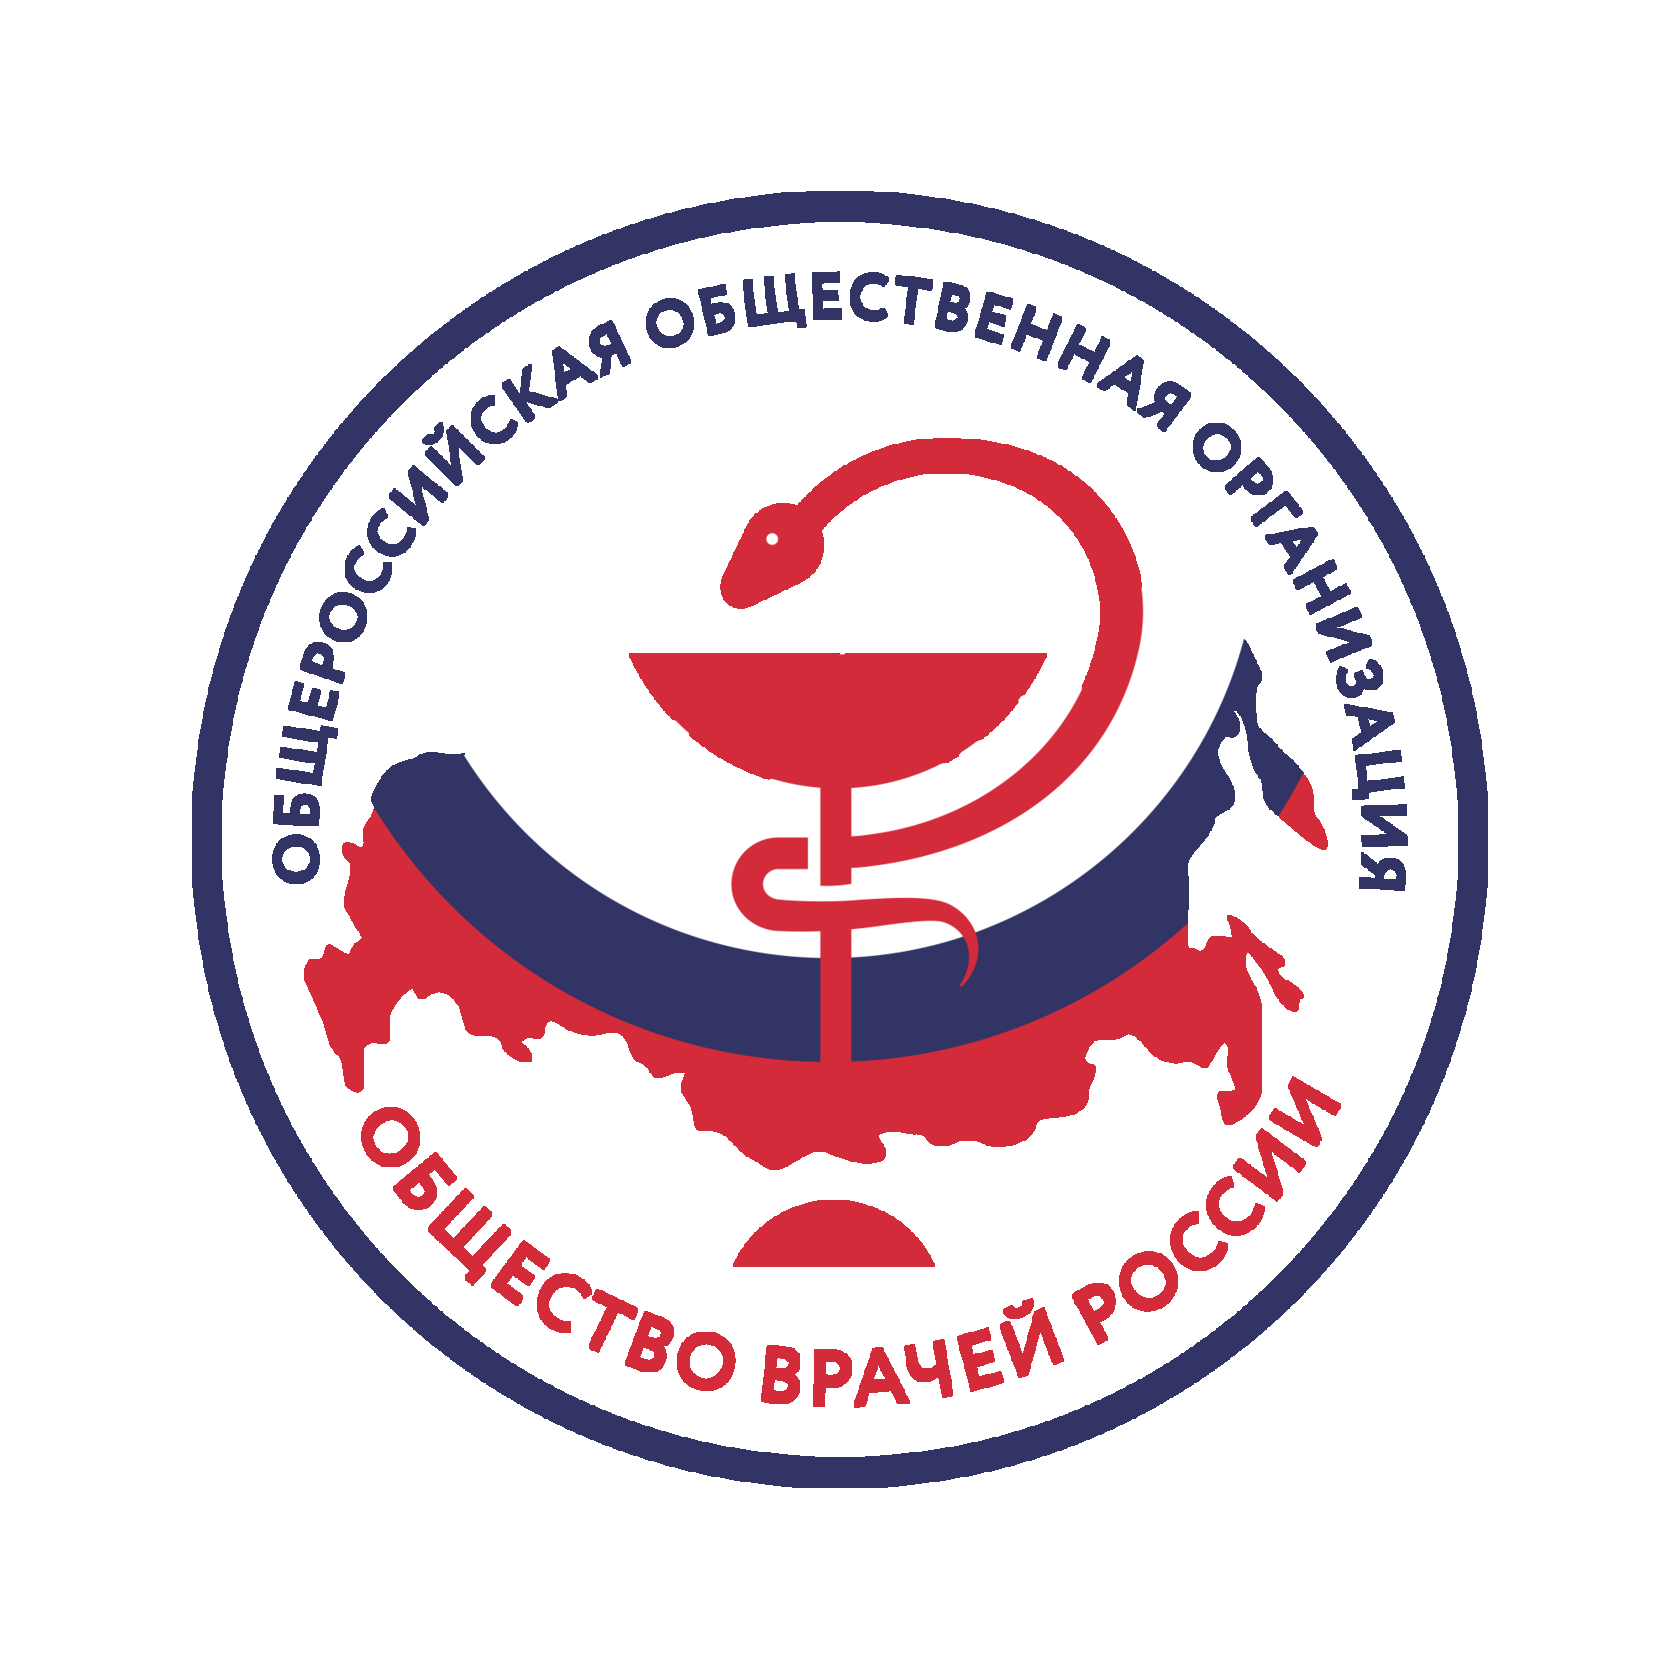 Общероссийская общественная организация «Общество врачей России»